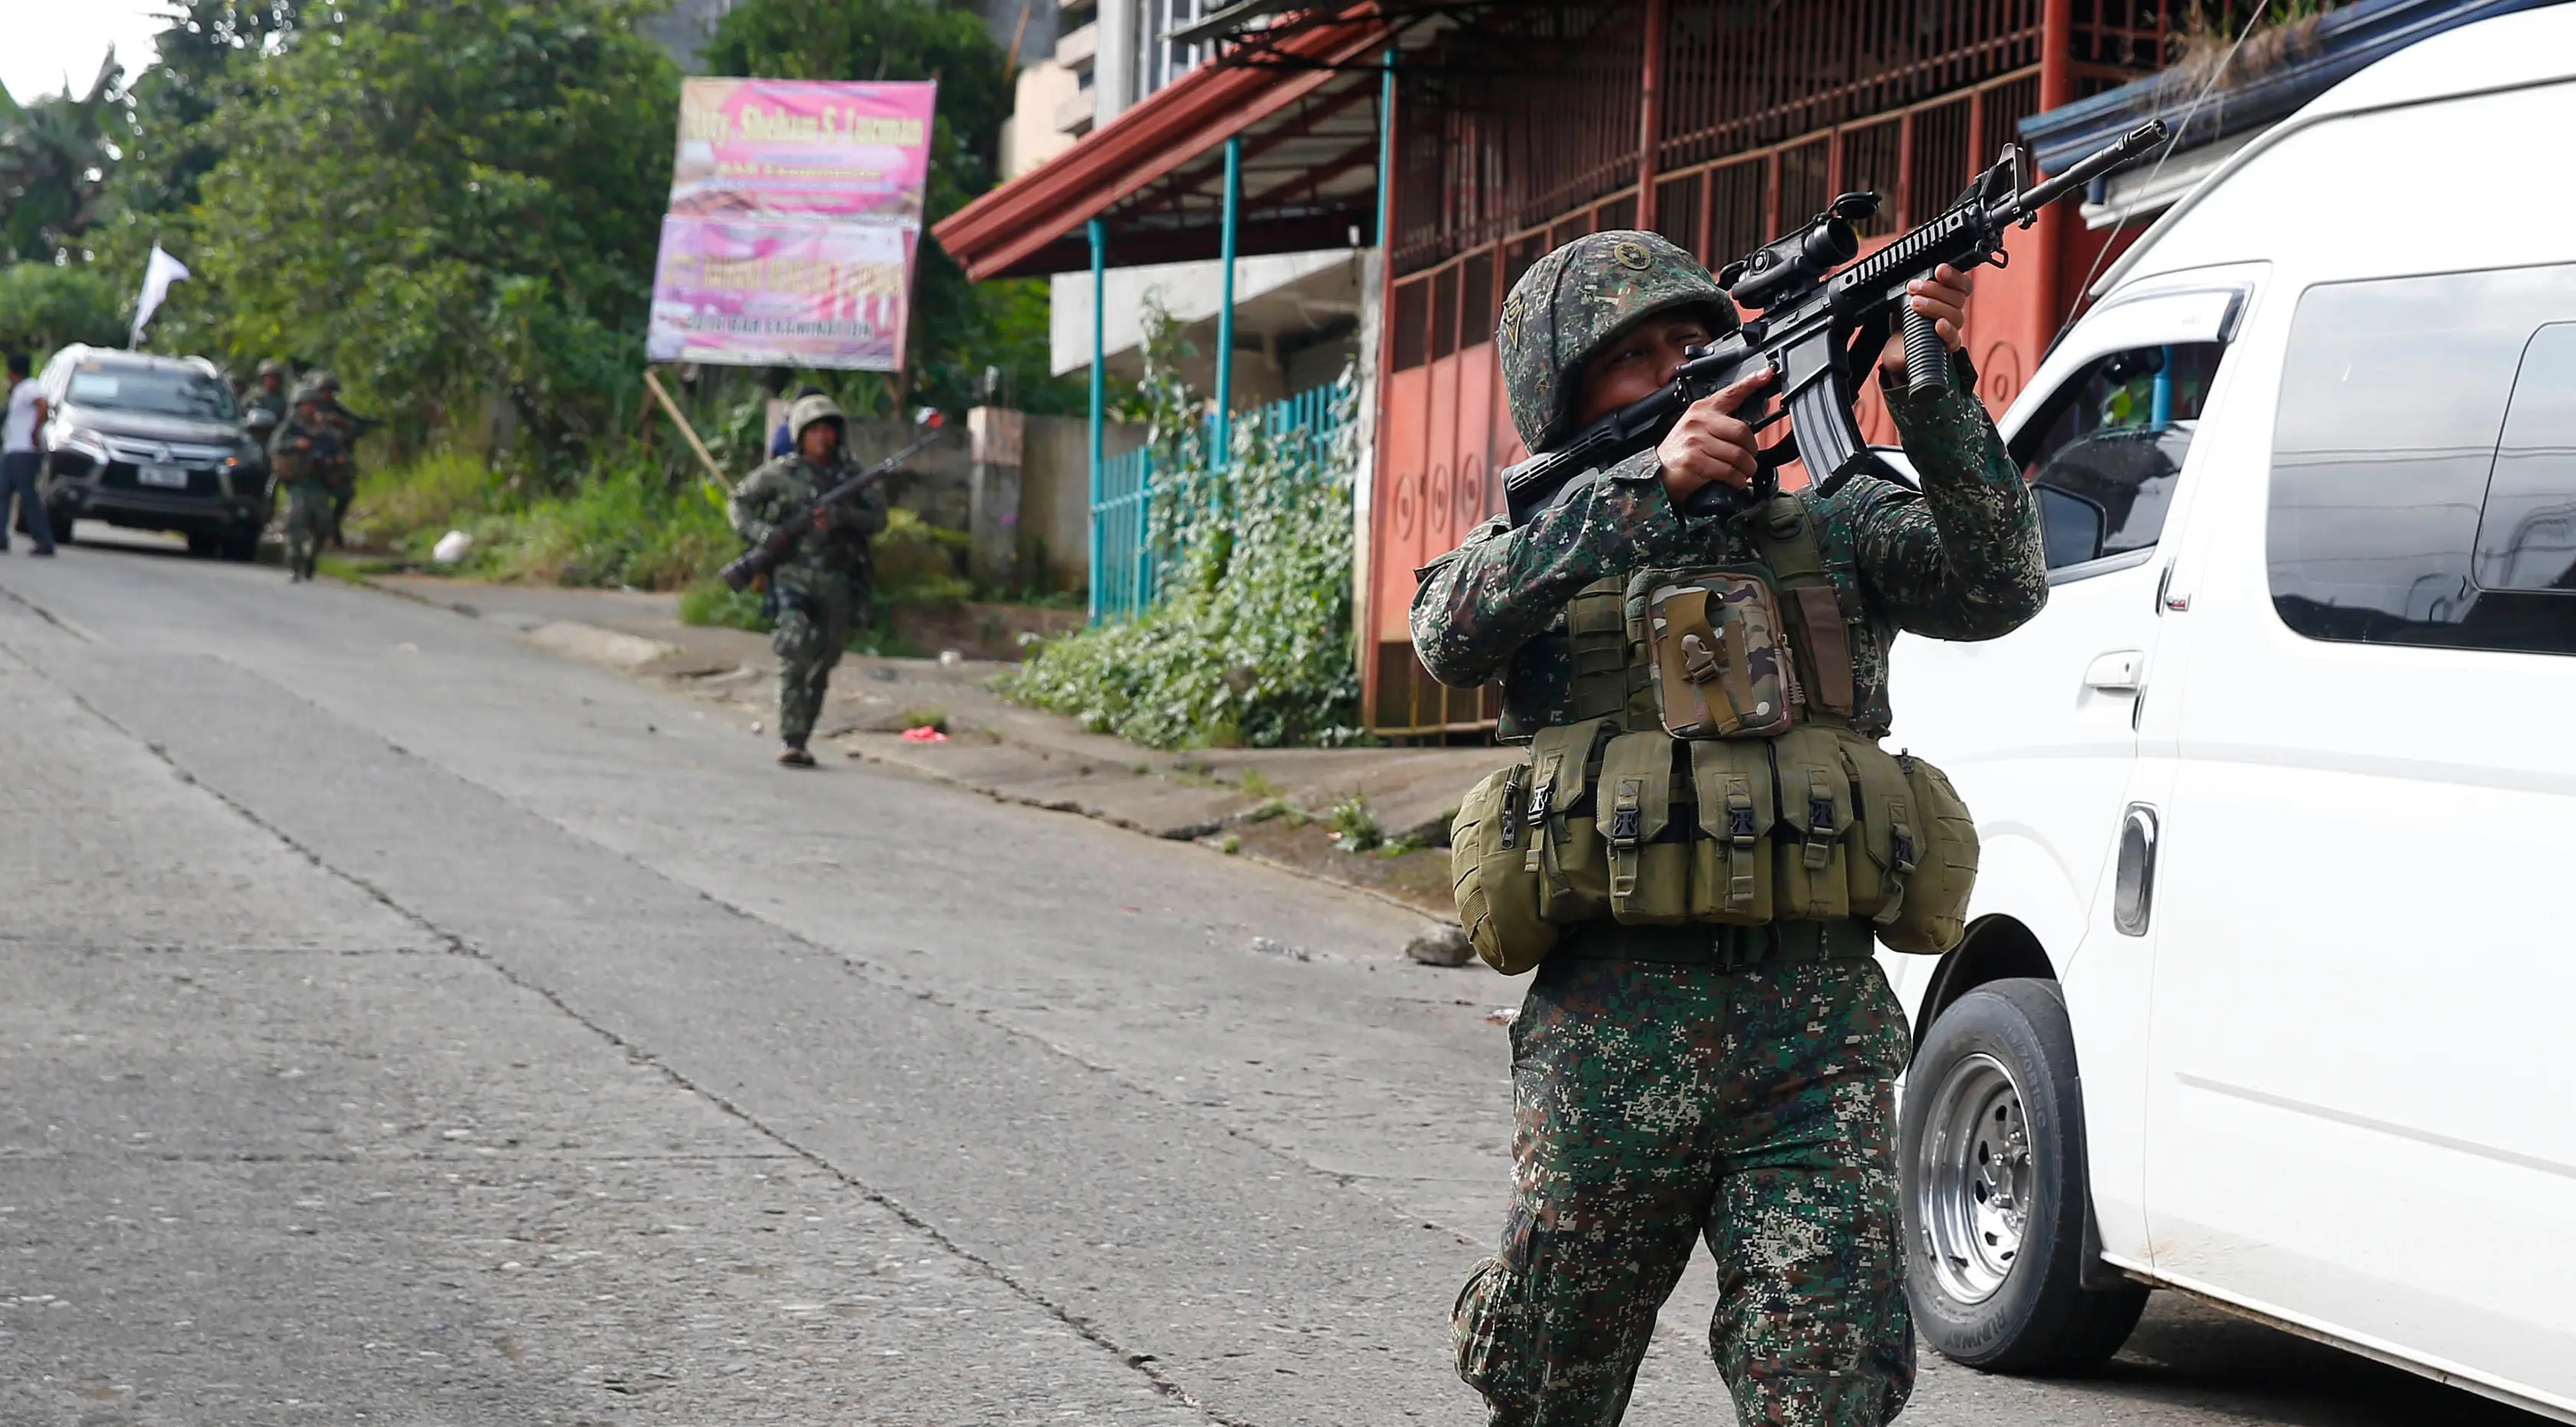 Tentara Filipina mengarahkan senjatanya saat bertempur melawan militan maute di kota Marawi, (28/5). Pasukan Filipina melancarkan serangan udara pada hari Minggu untuk mengusir militan yang terkait dengan kelompok ISIS. (AP Photo/Bullit Marquez)